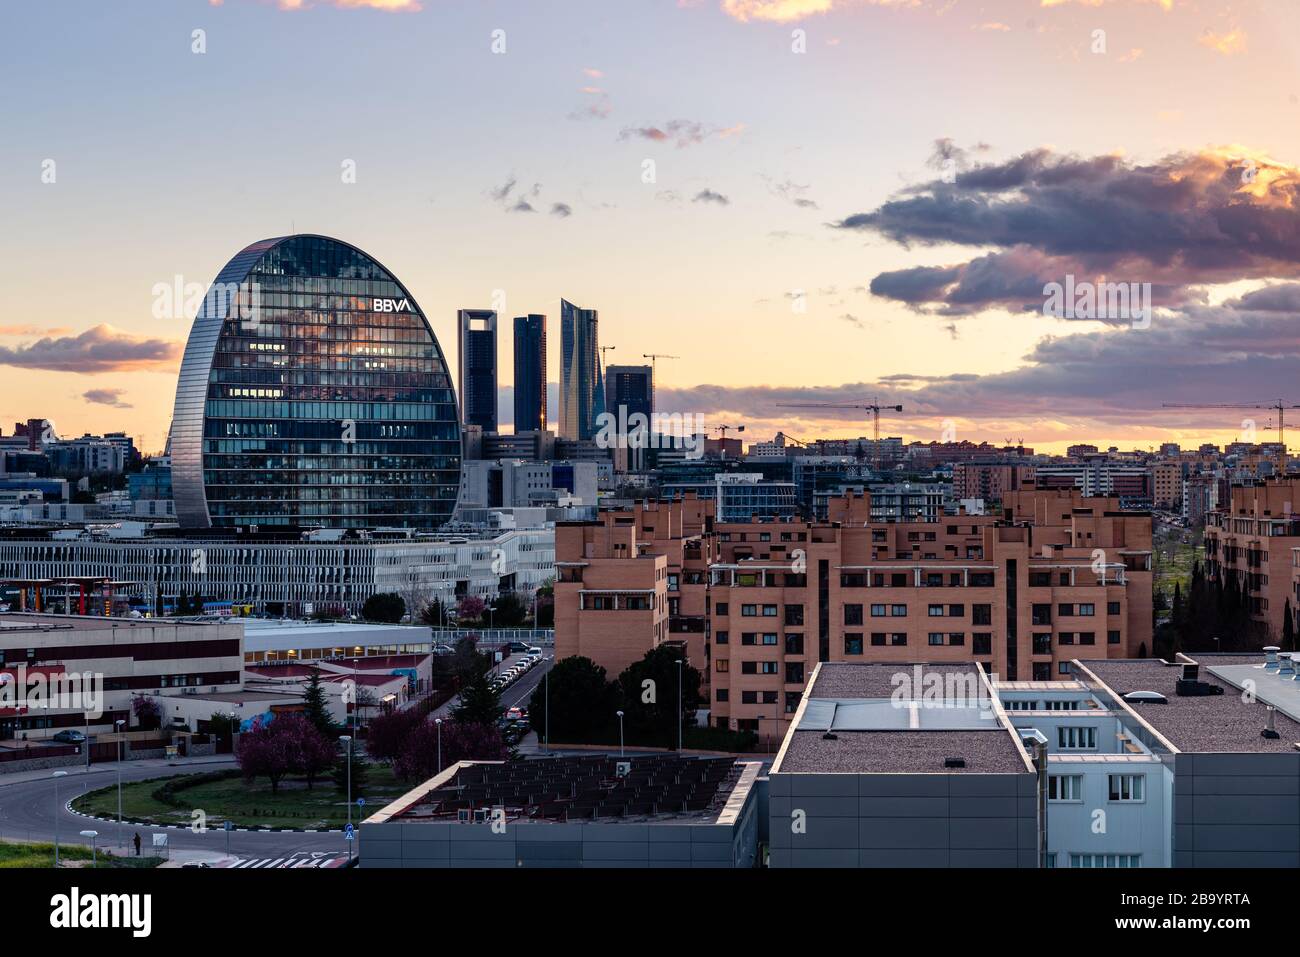 Madrid, España - 7 de marzo de 2020: Vista del horizonte urbano de Madrid  con el barrio residencial las tablas, el edificio de oficinas de BBVA y el  cuatro Torres Financial di